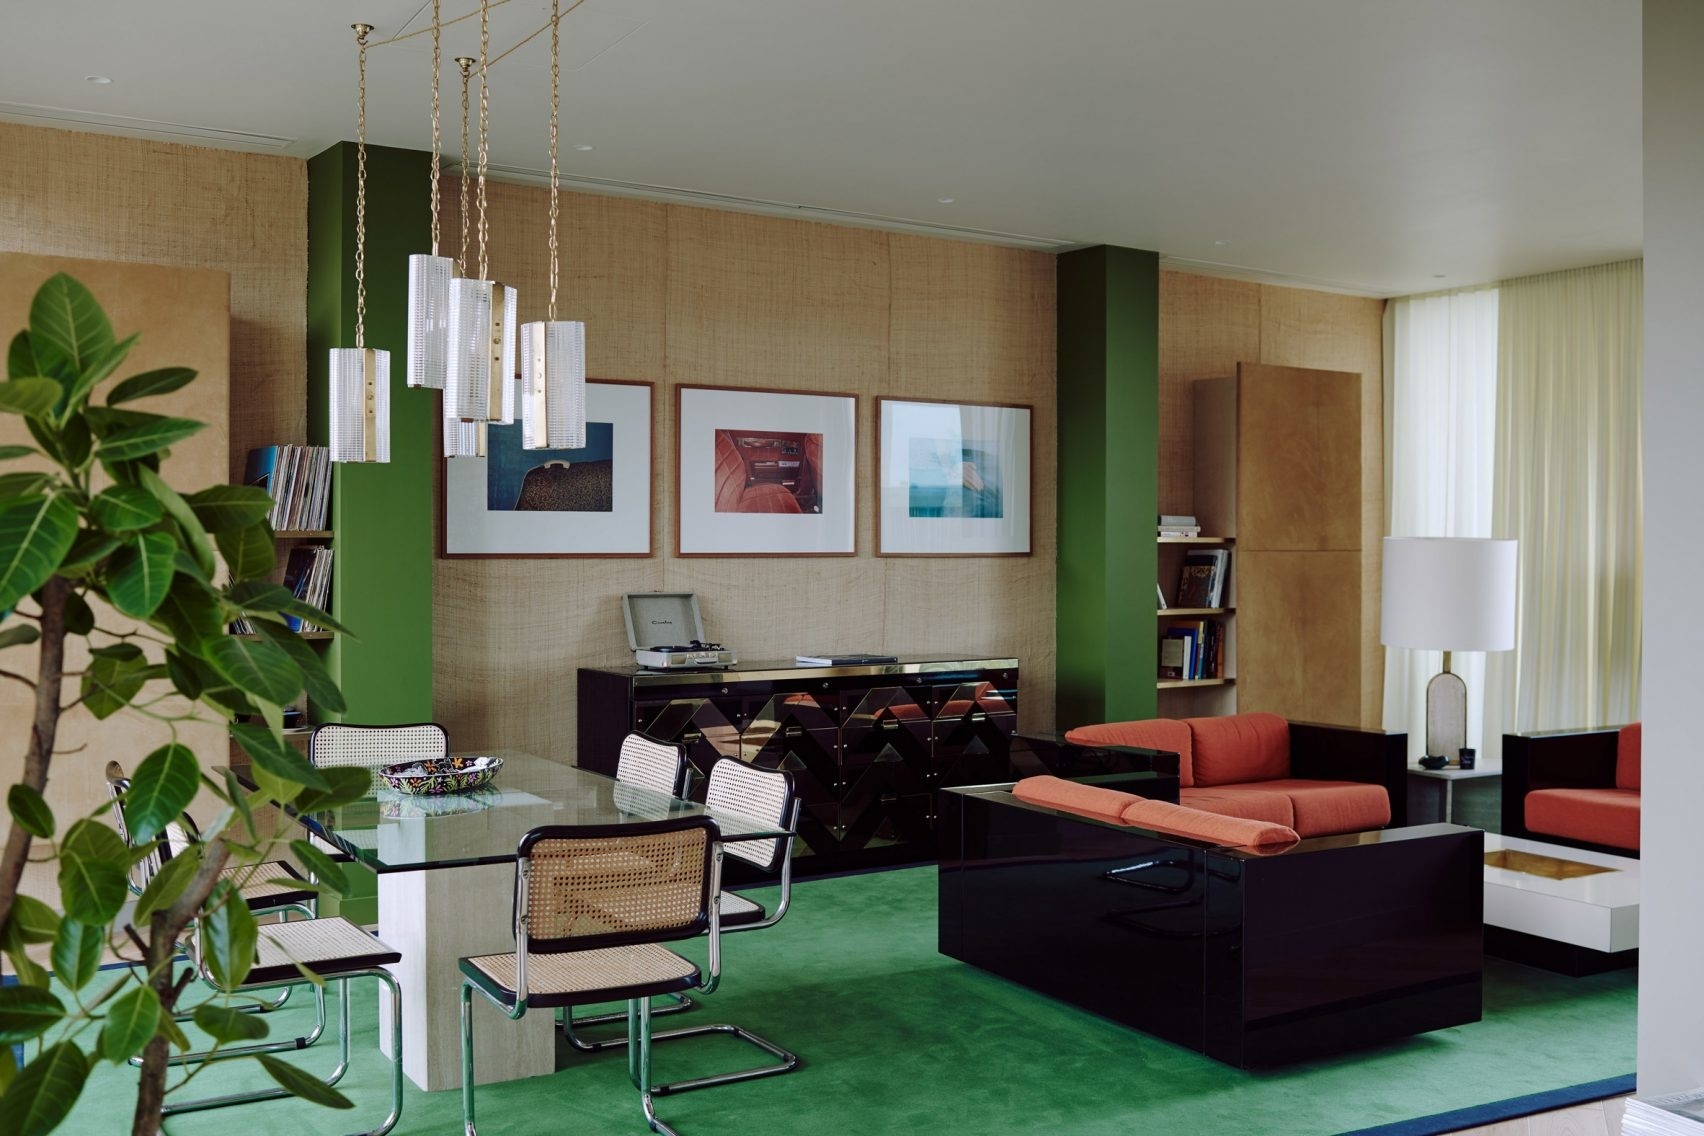 Màu xanh lá cây trẻ trung, màu đỏ quyến rũ, sắc nâu gỗ ấm áp và màu đen bí ẩn là các tone màu trang trí giúp NTK nội thất 'tạo khối' cho phòng khách hiệu quả. 